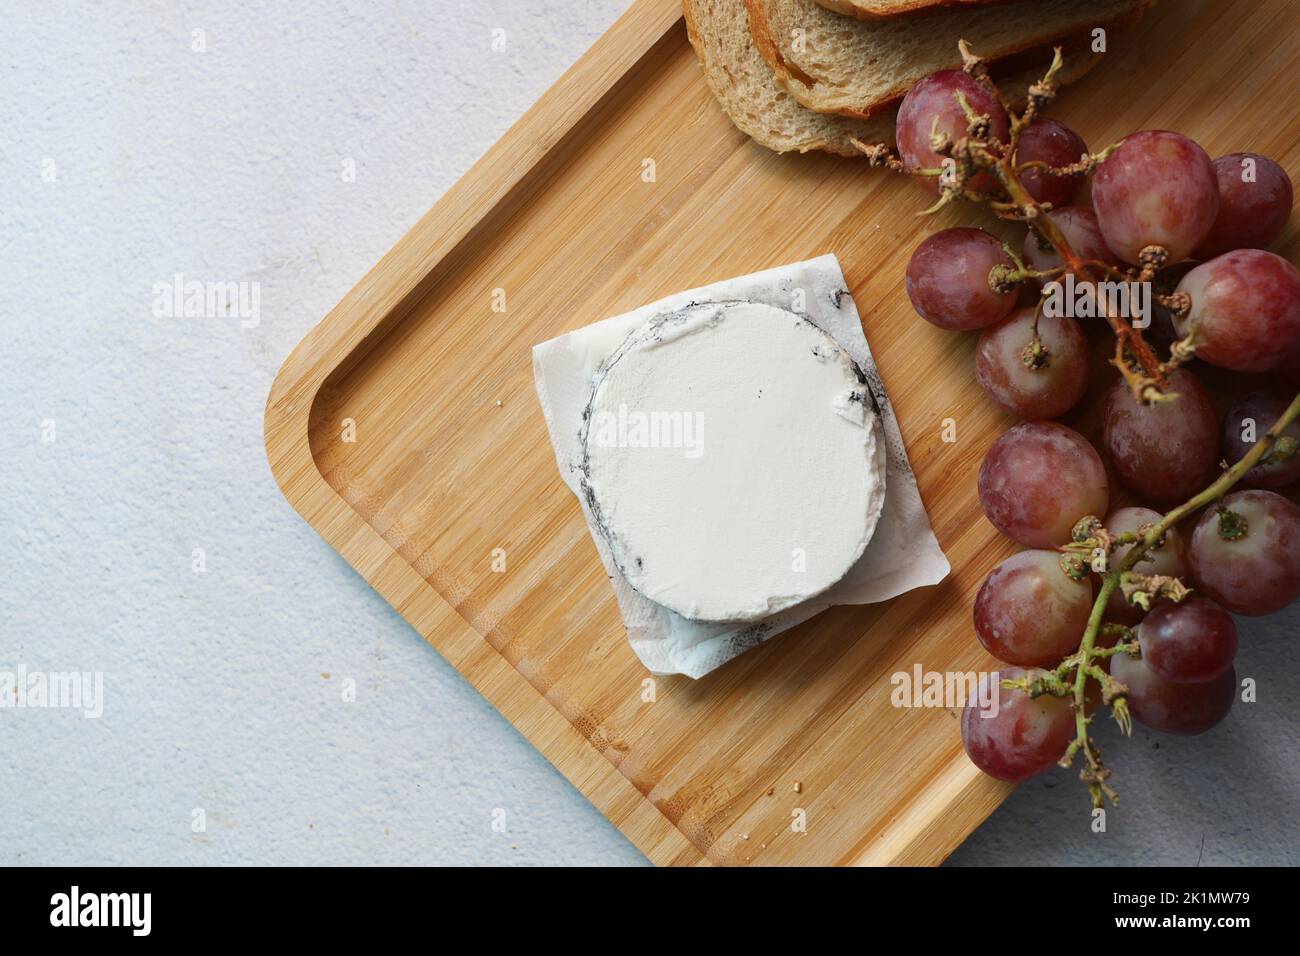 vue de dessus du fromage de chèvre frais et des fruits à raisin sur fond de bois. Banque D'Images